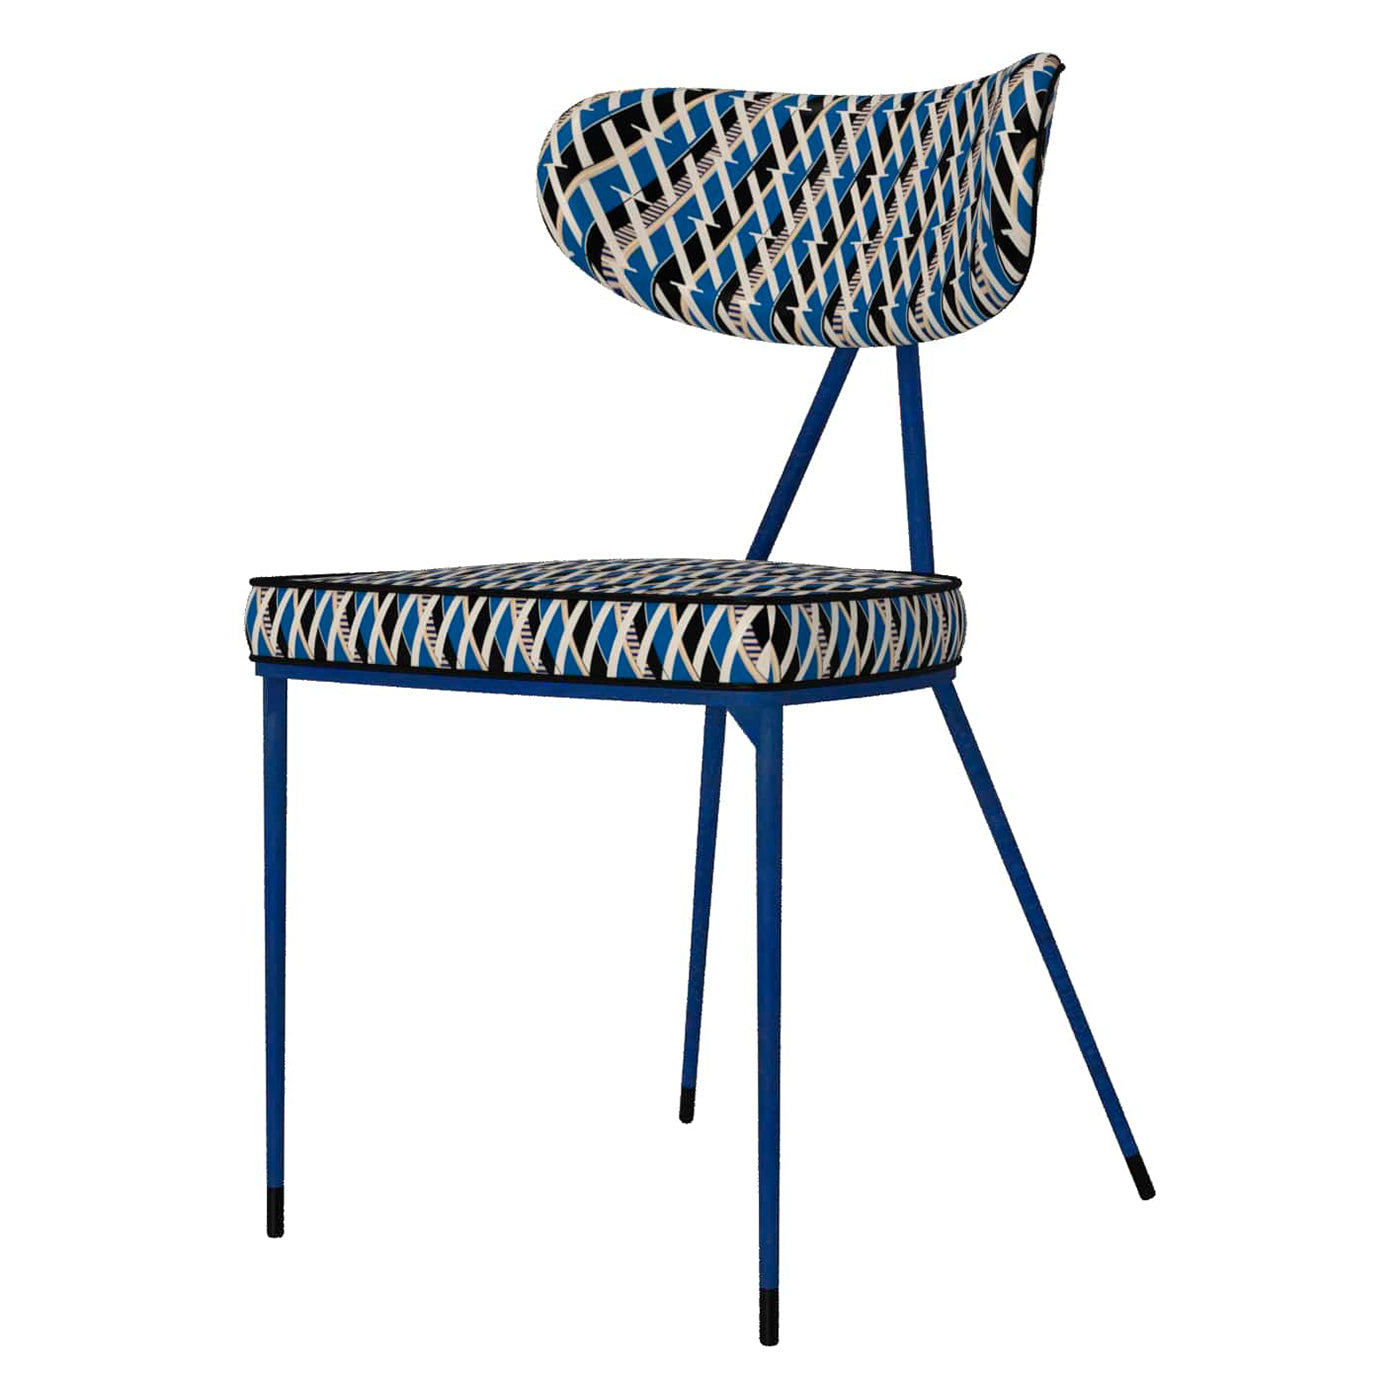 Kleins Blue Chair Objet - Alternative view 2